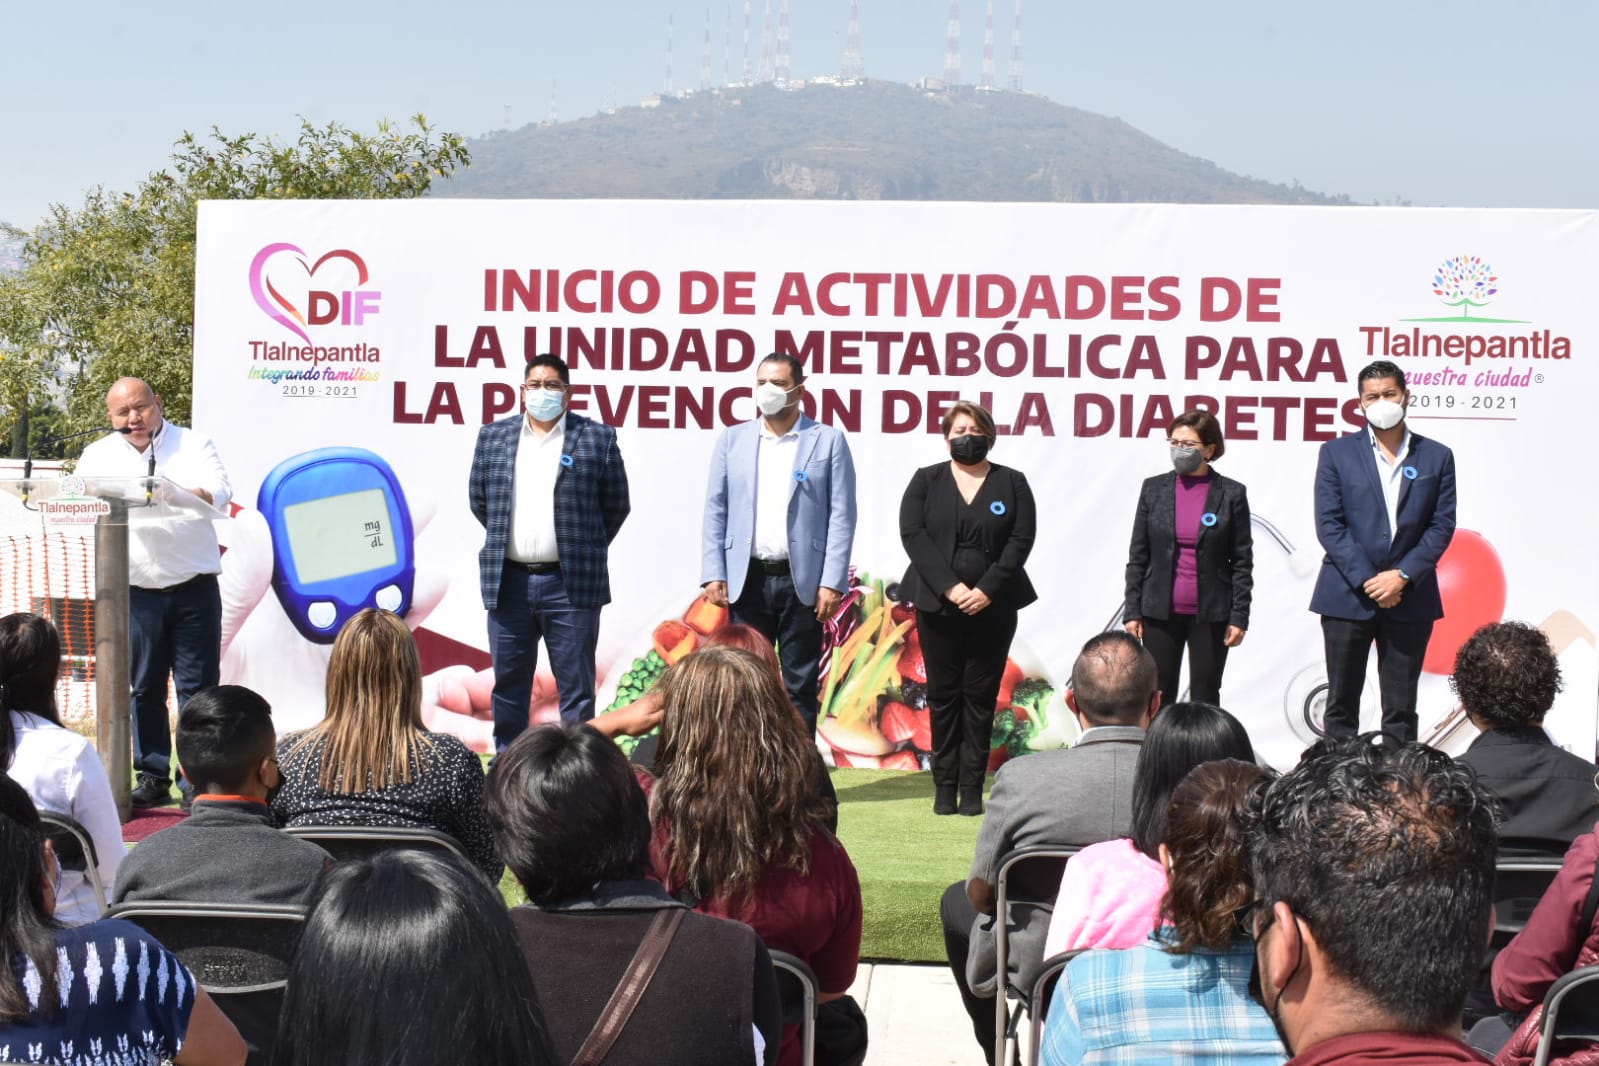 Inicia Actividades la Unidad Metabólica para la Prevención de la Diabetes